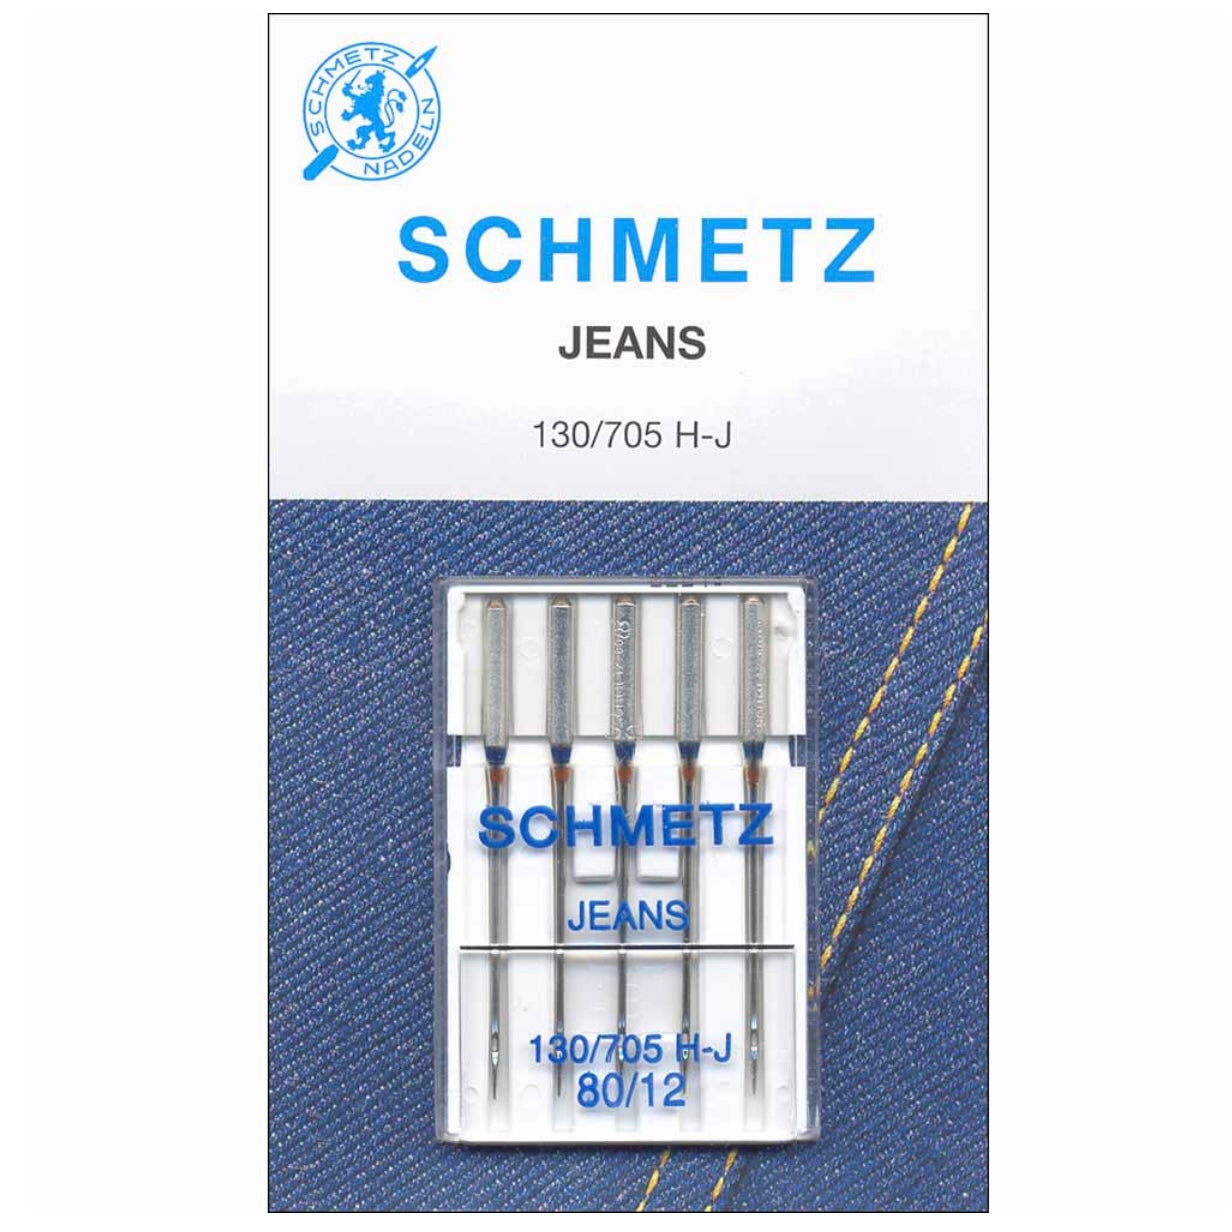 Denim Needles - Schmetz - 80/12 - 5 Count